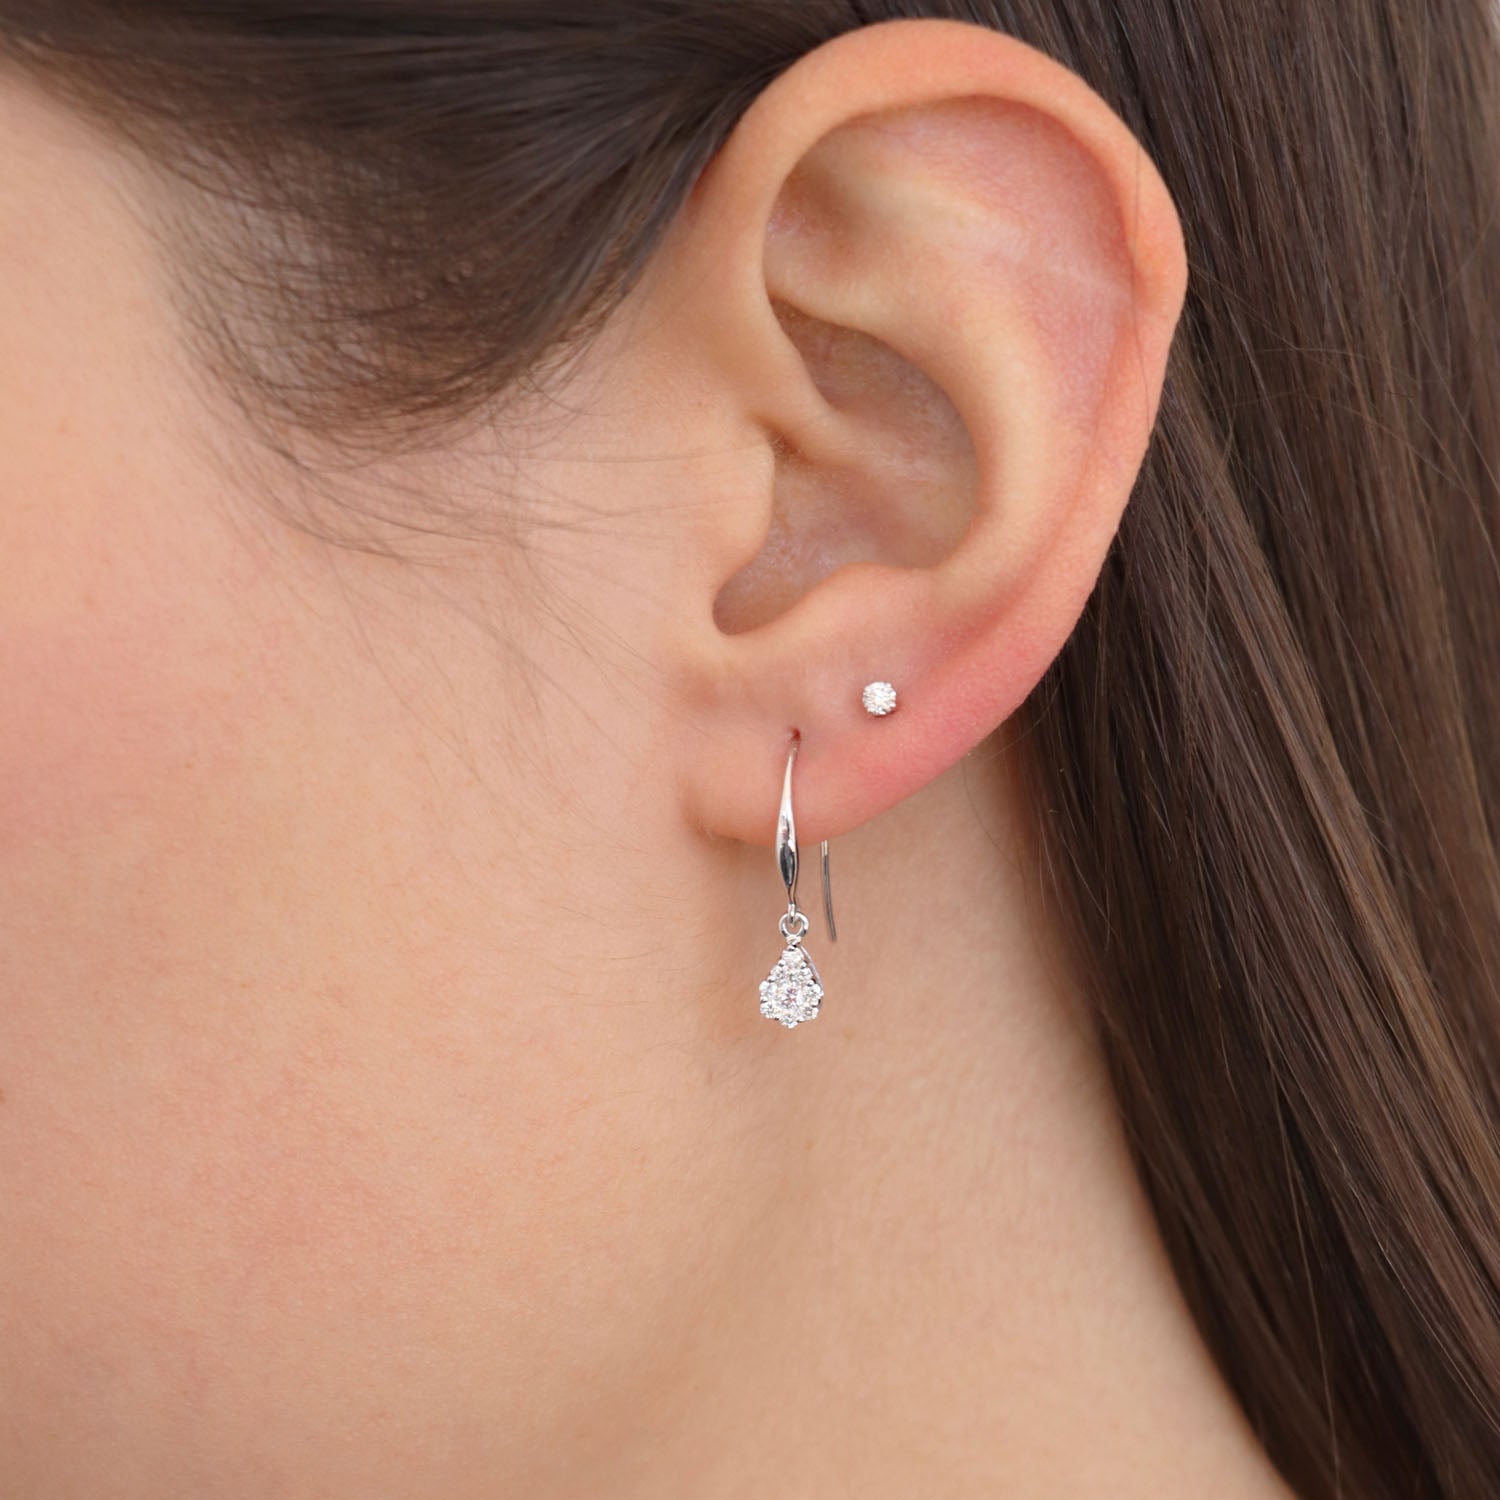 Tear Drop Hook Diamond Earrings with 0.25ct Diamonds in 9K White Gold - 9WTDSH25GH